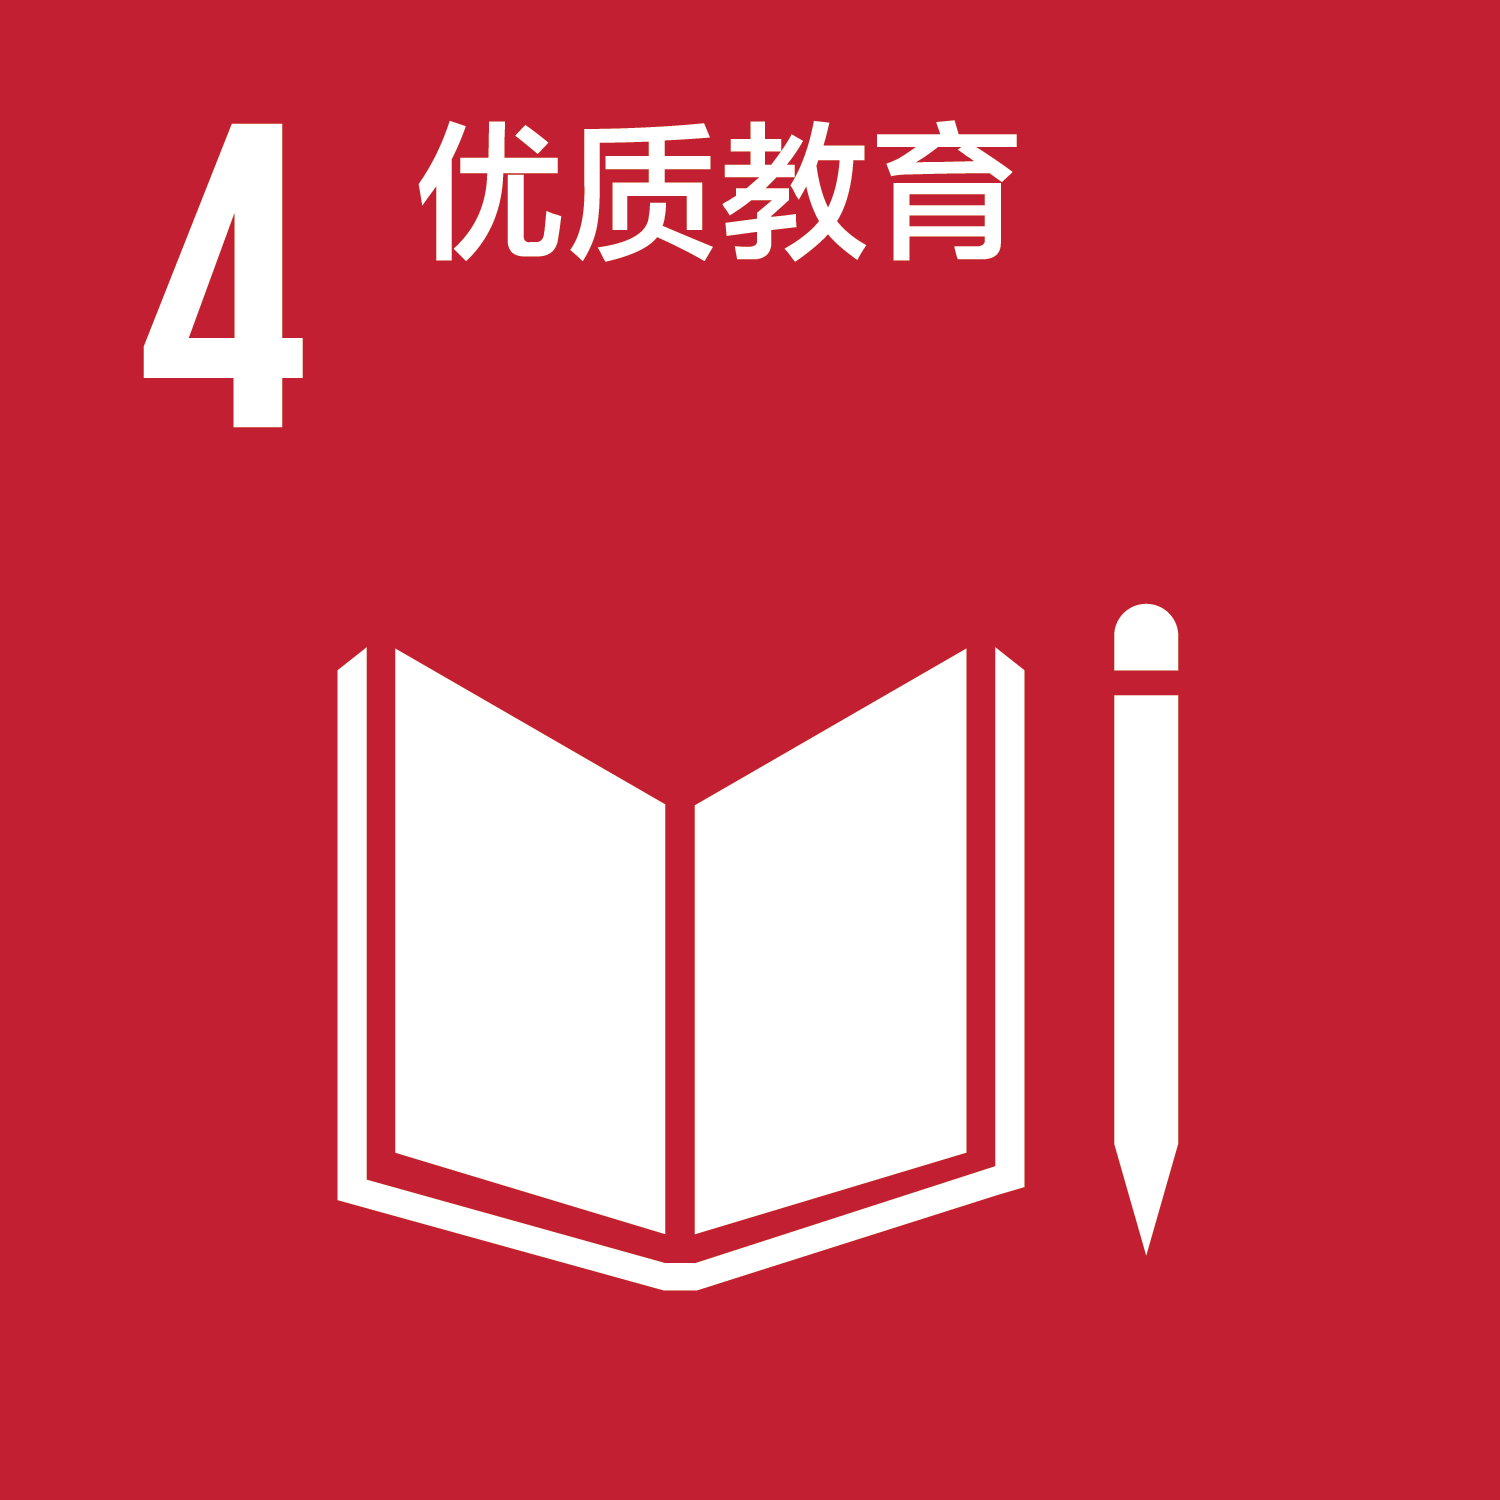 可持续发展目标-4优质教育